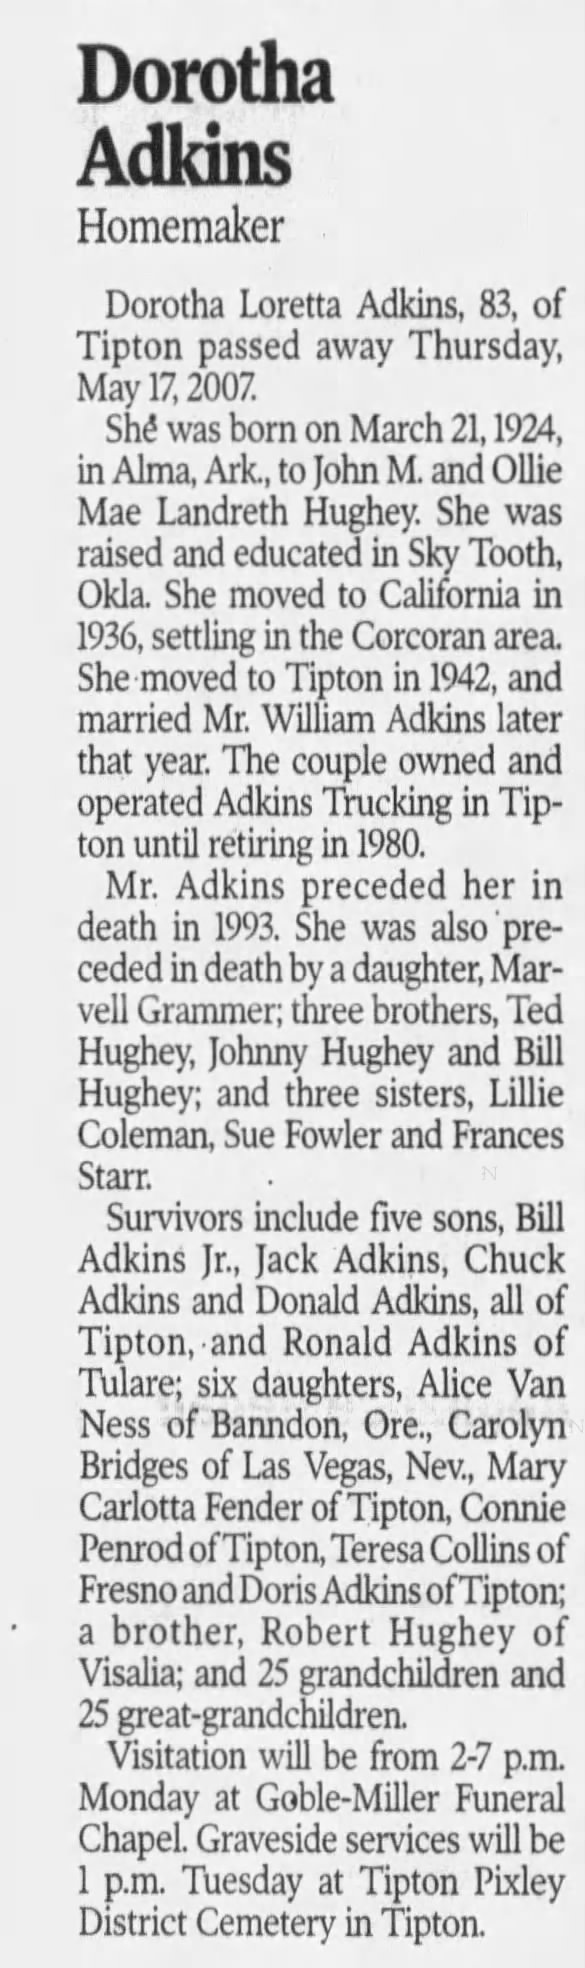 Dorotha Adkins, age 83, obituary. 2007.